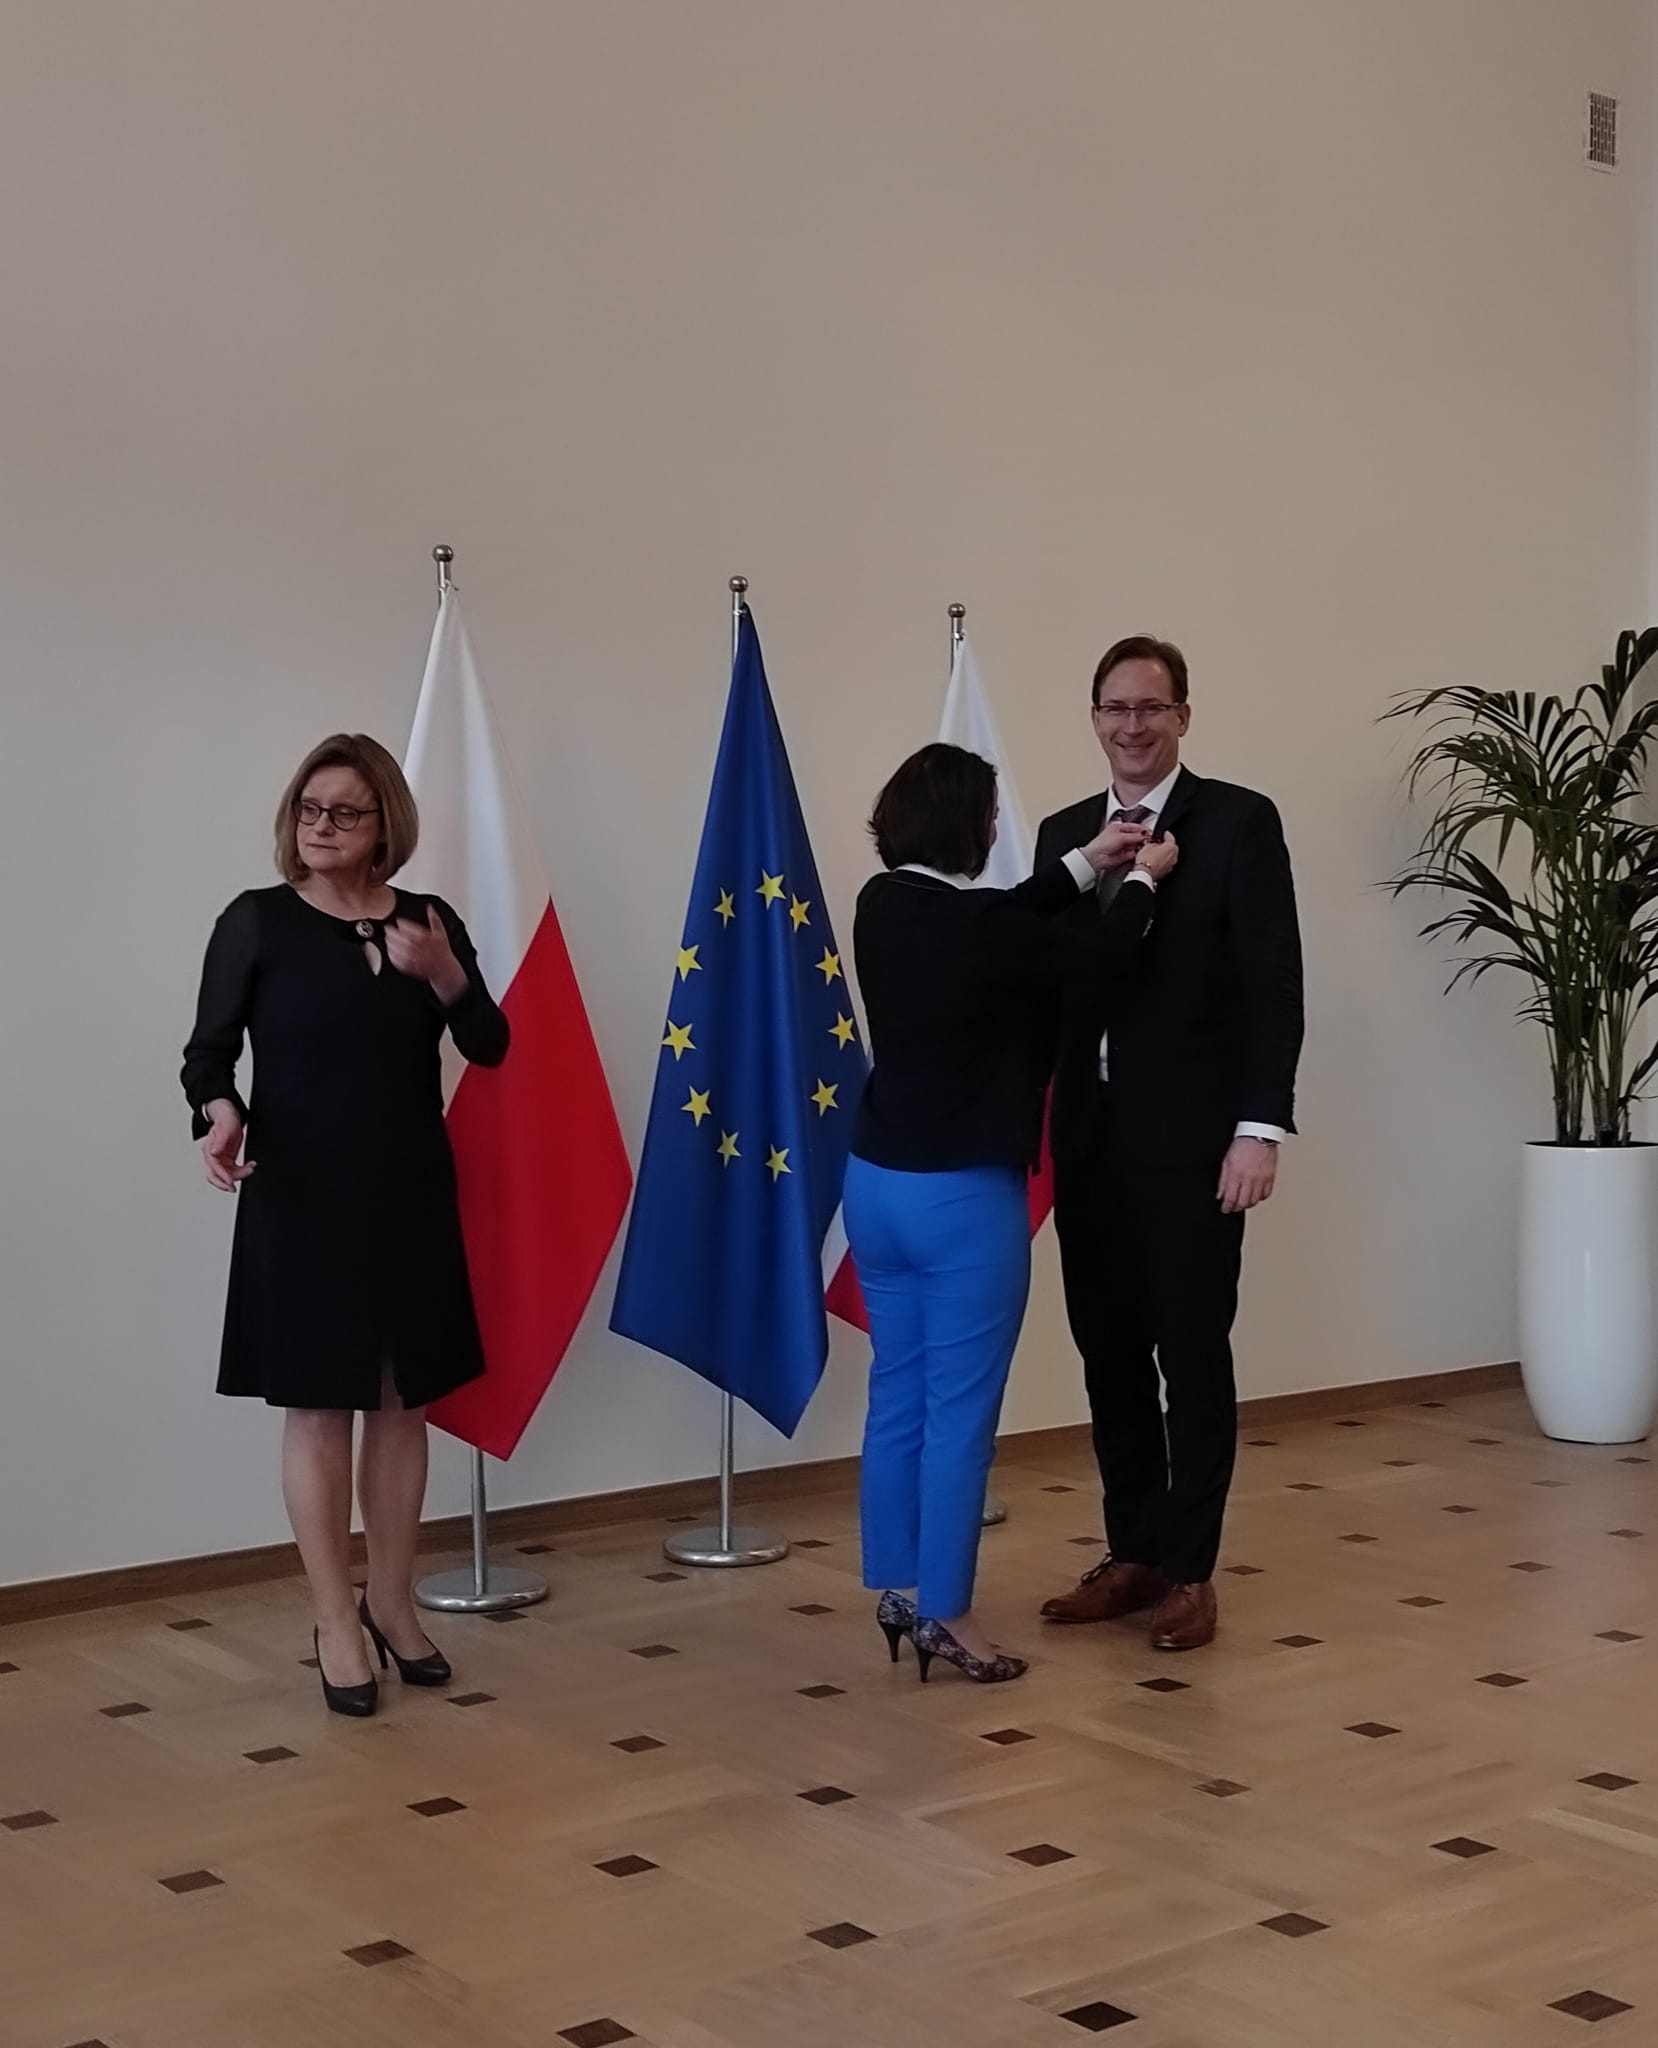 Ubrany na elegancko mężczyzana, stoi na baczność w dużej sali i odbiera nagrodę wręczaną przez kobietę. Za nim znajduje się dwie flagii Polski oraz jedna flaga Uni Europejskiej.